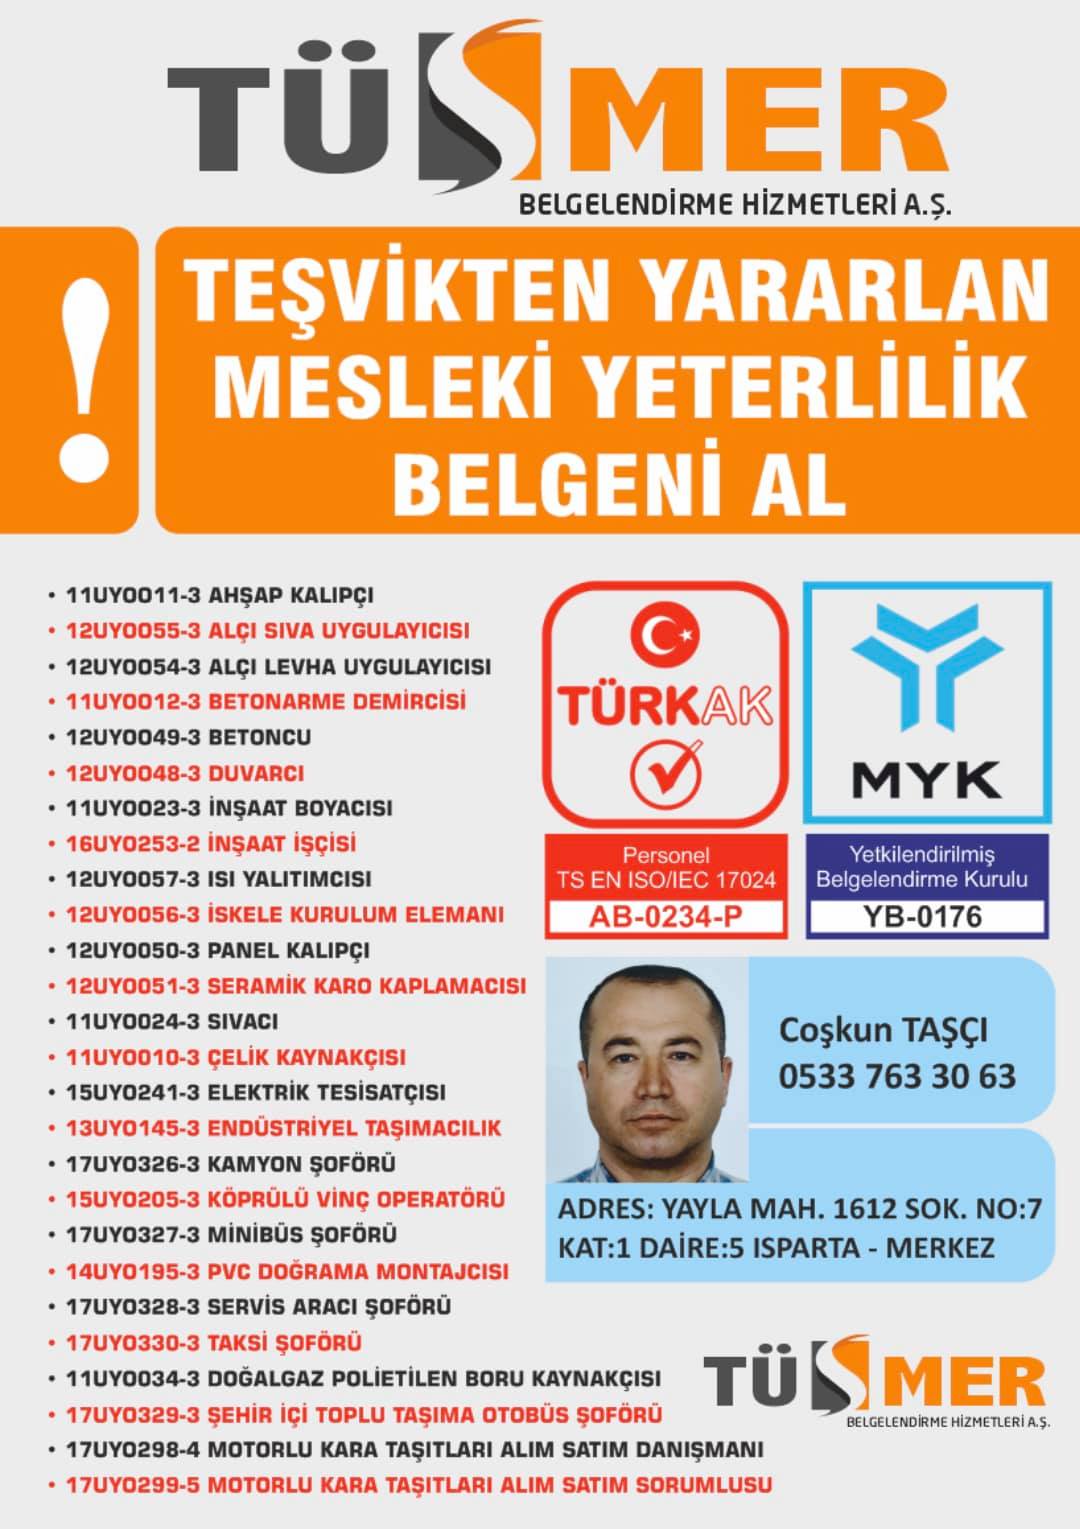 MYK MESLEKİ YETERLİLİK BELGESİ Yalıköy Beykoz İstanbul